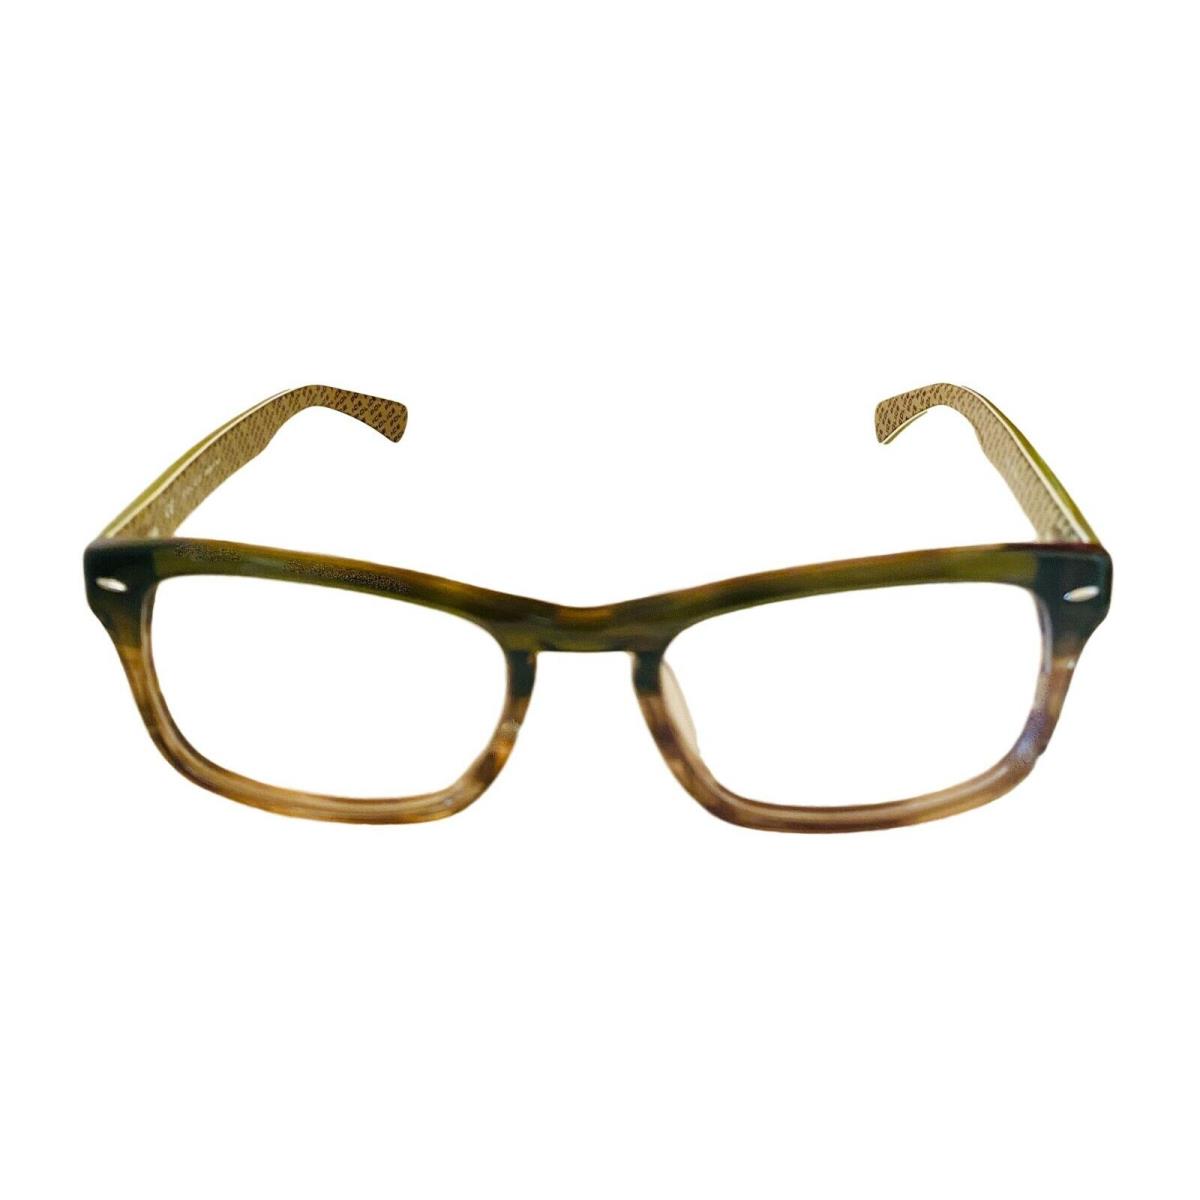 Police eyeglasses  - Olive Horn Frame 0